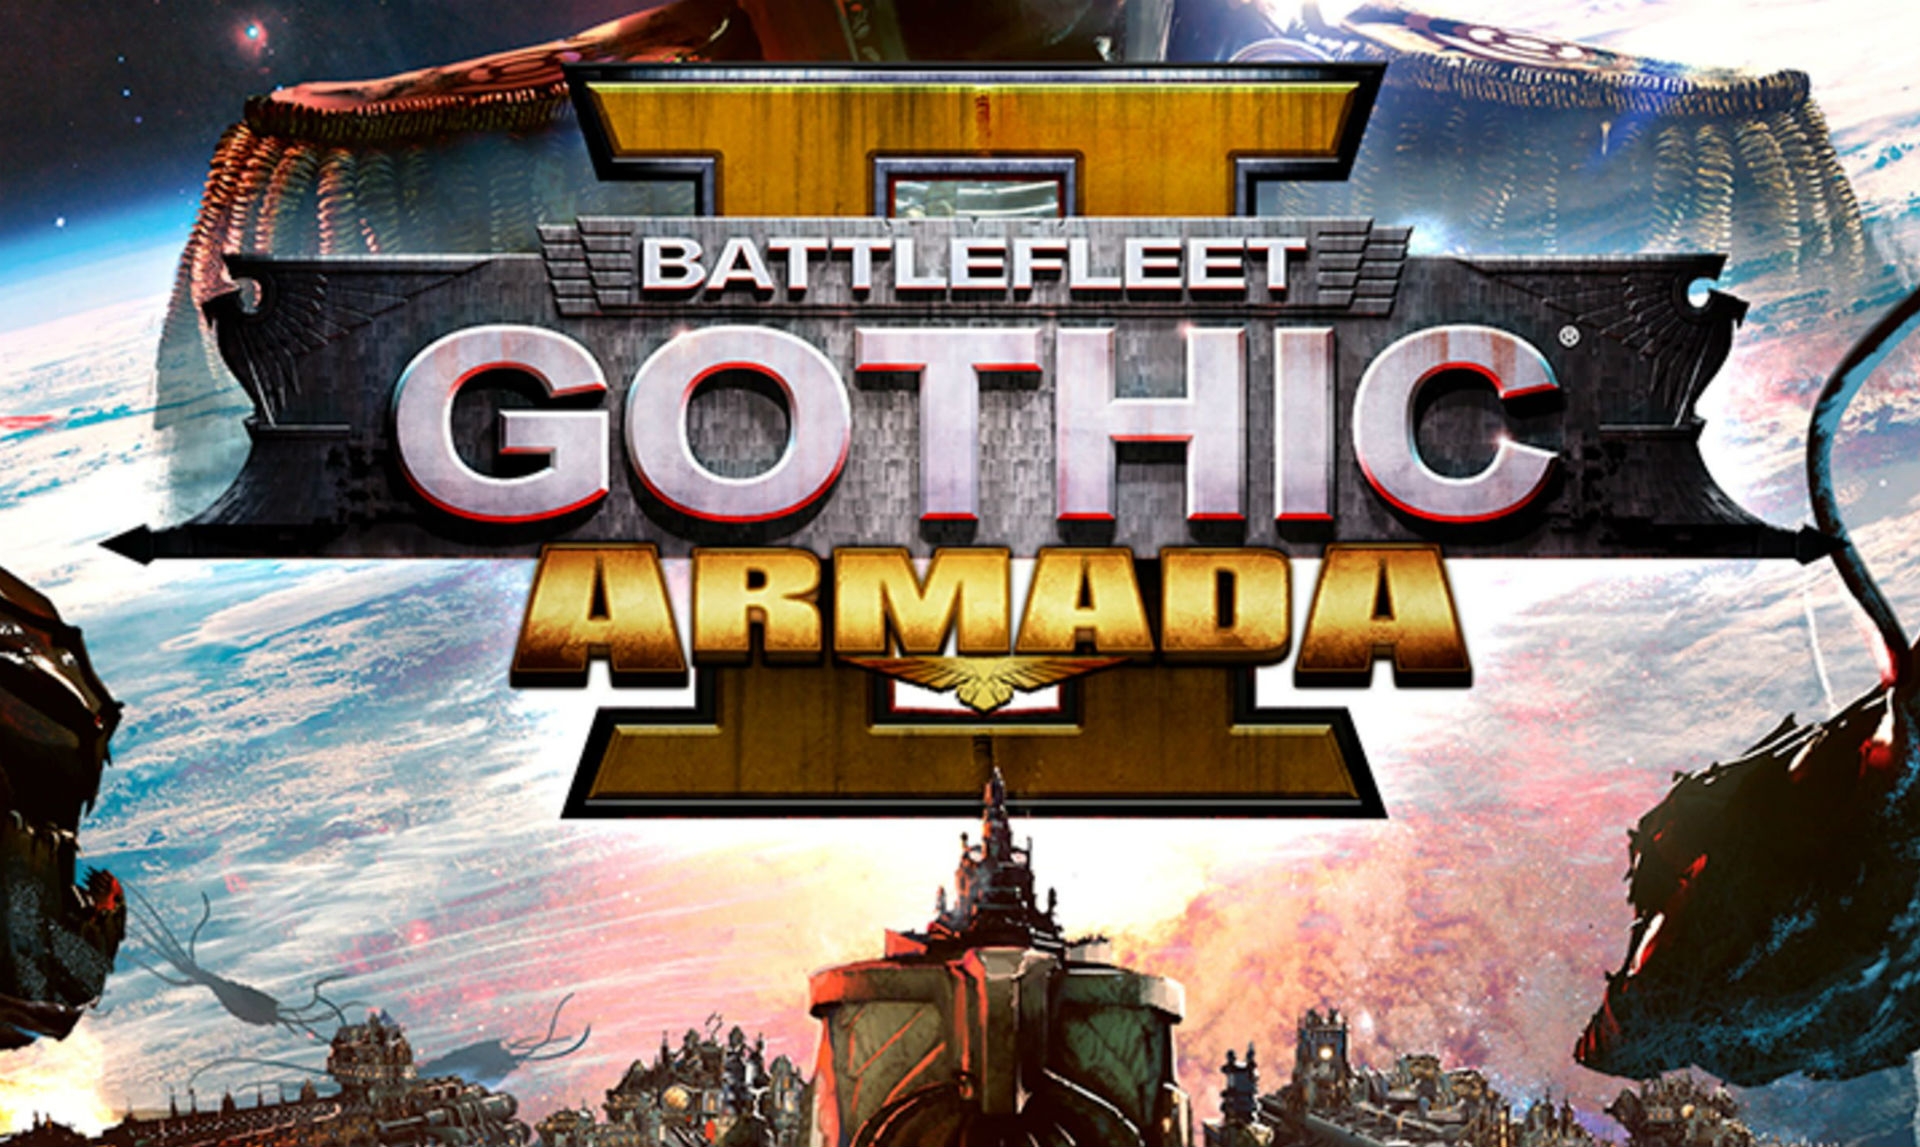 Файлы для игры Battlefleet Gothic: Armada 2